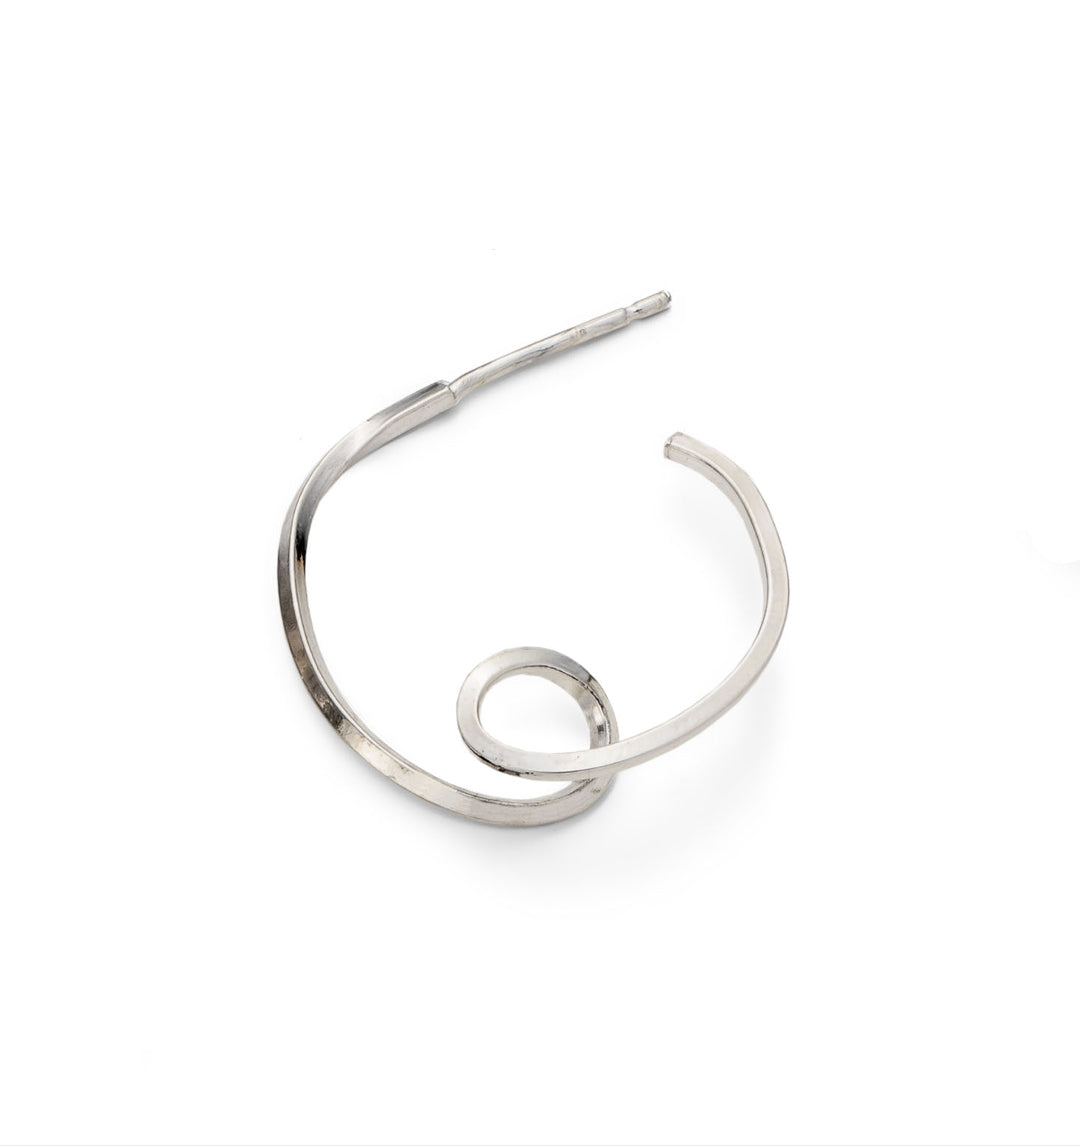 small 2cm diameter Loop d Loop hoop earring with little loop detail at the bottom